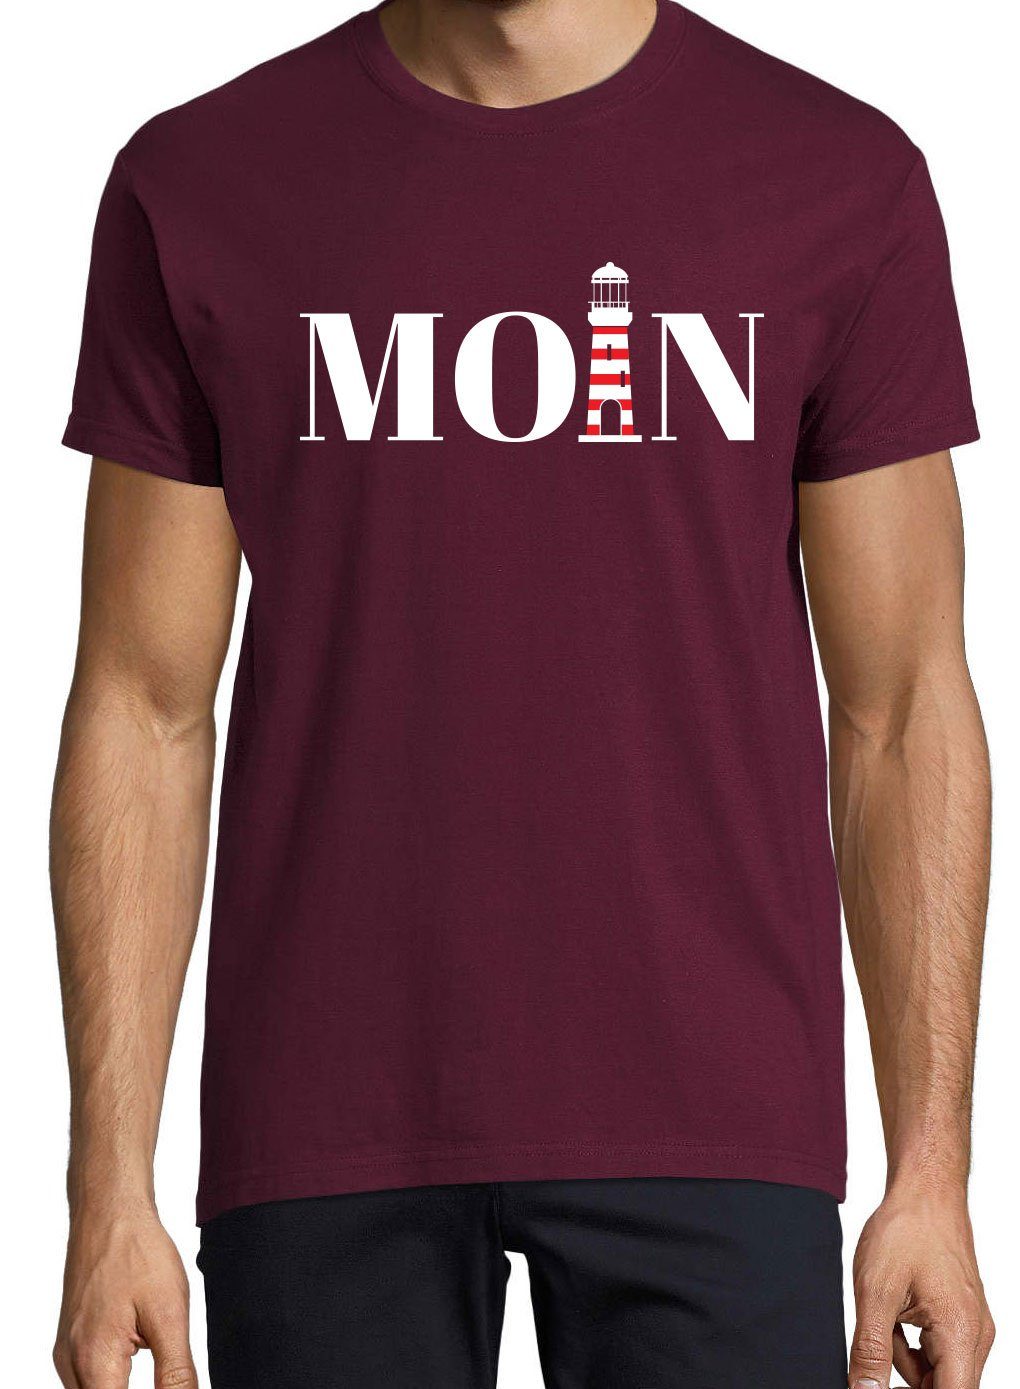 Shirt Leuchtturm mit Herren Youth Moin Designz T-Shirt trendigem Frontprint Burgund